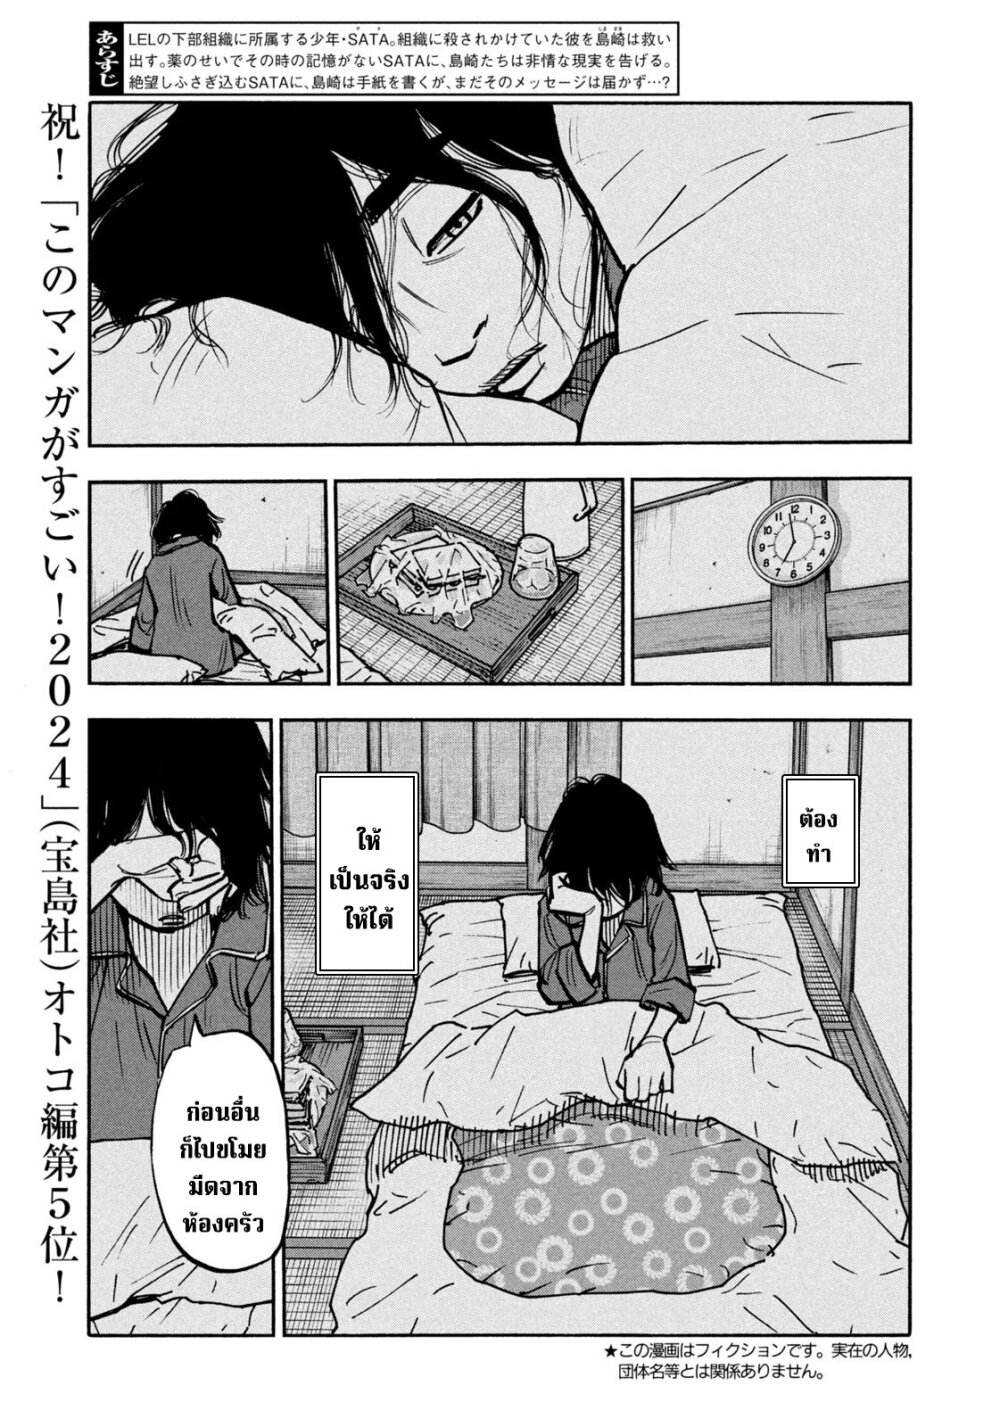 อ่านมังงะ Heiwa no Kuni no Shimazaki e ตอนที่ 52/2.jpg